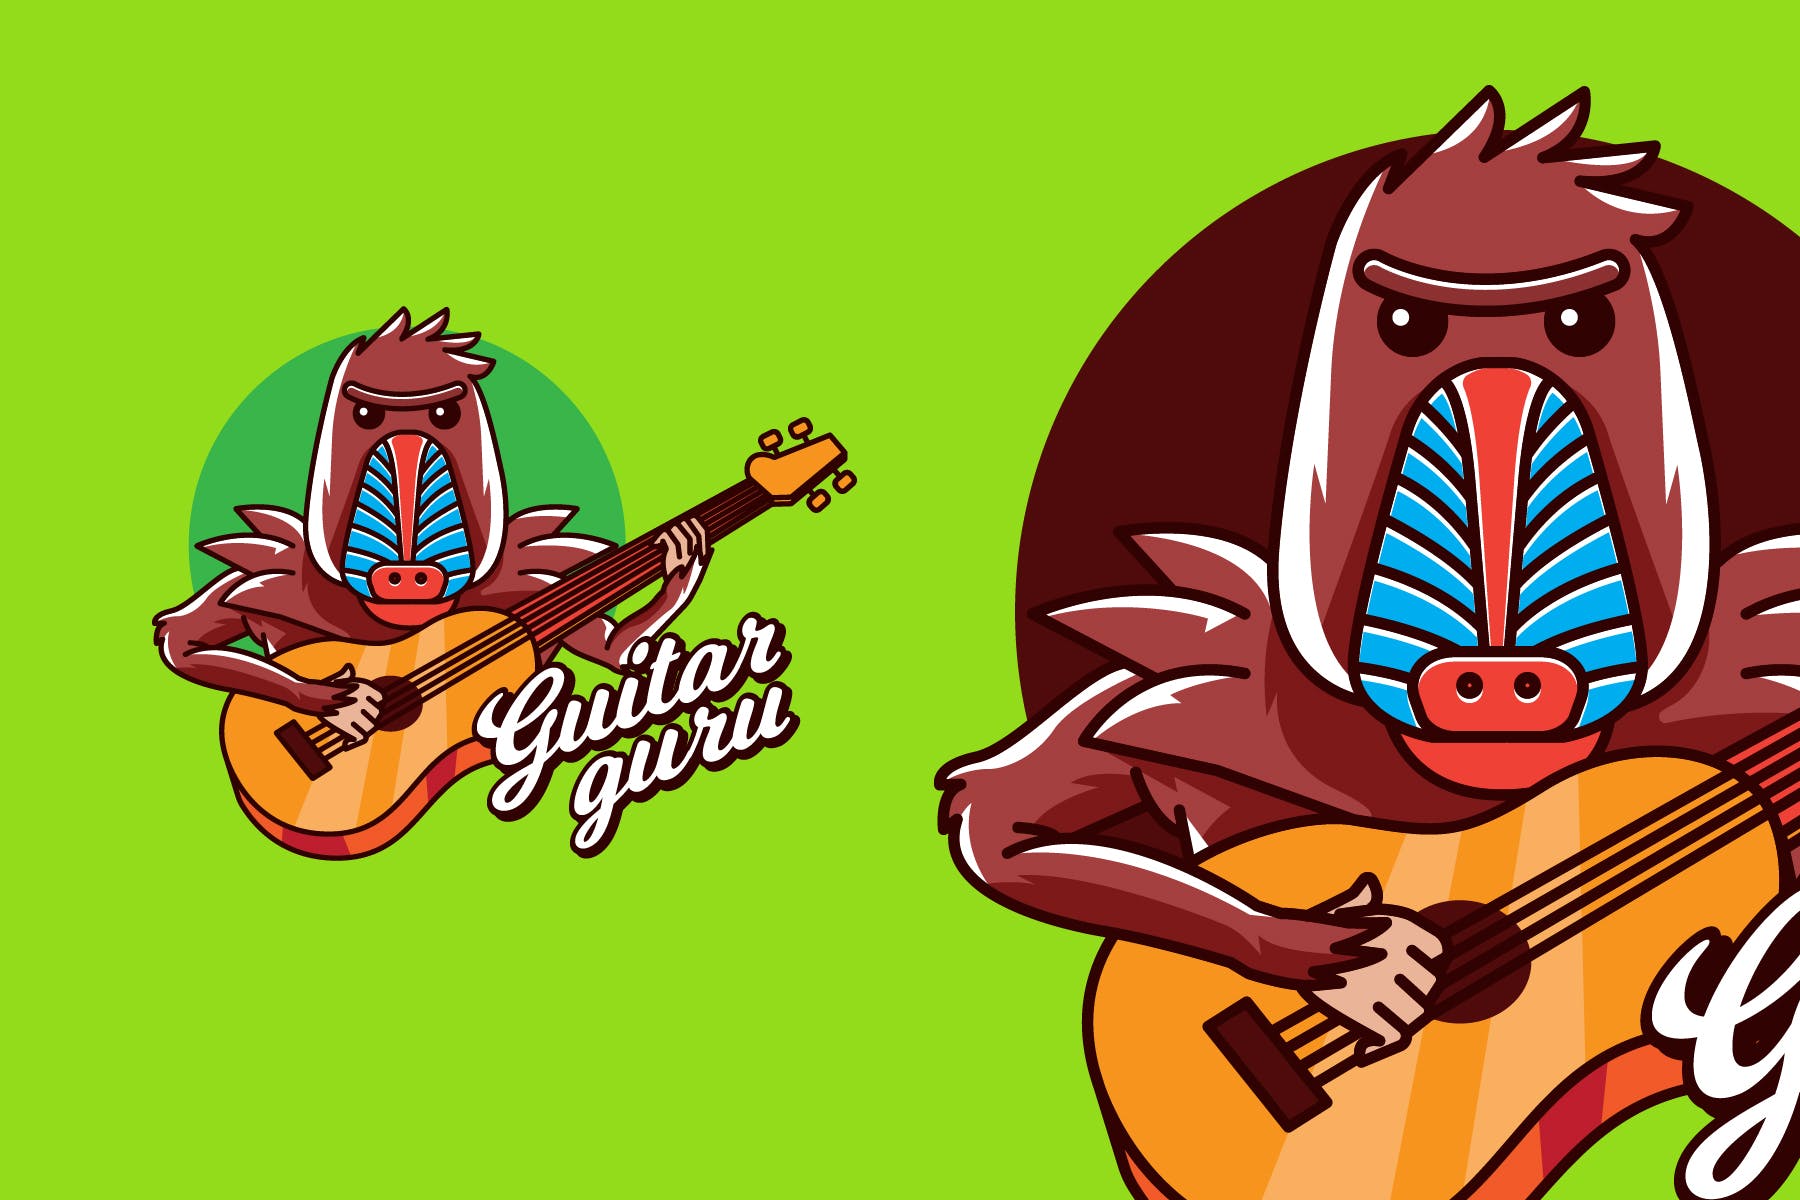 吉他大师卡通形象音乐培训品牌Logo设计第一素材精选模板 GUITAR GURU – Mascot & Esport Logo插图